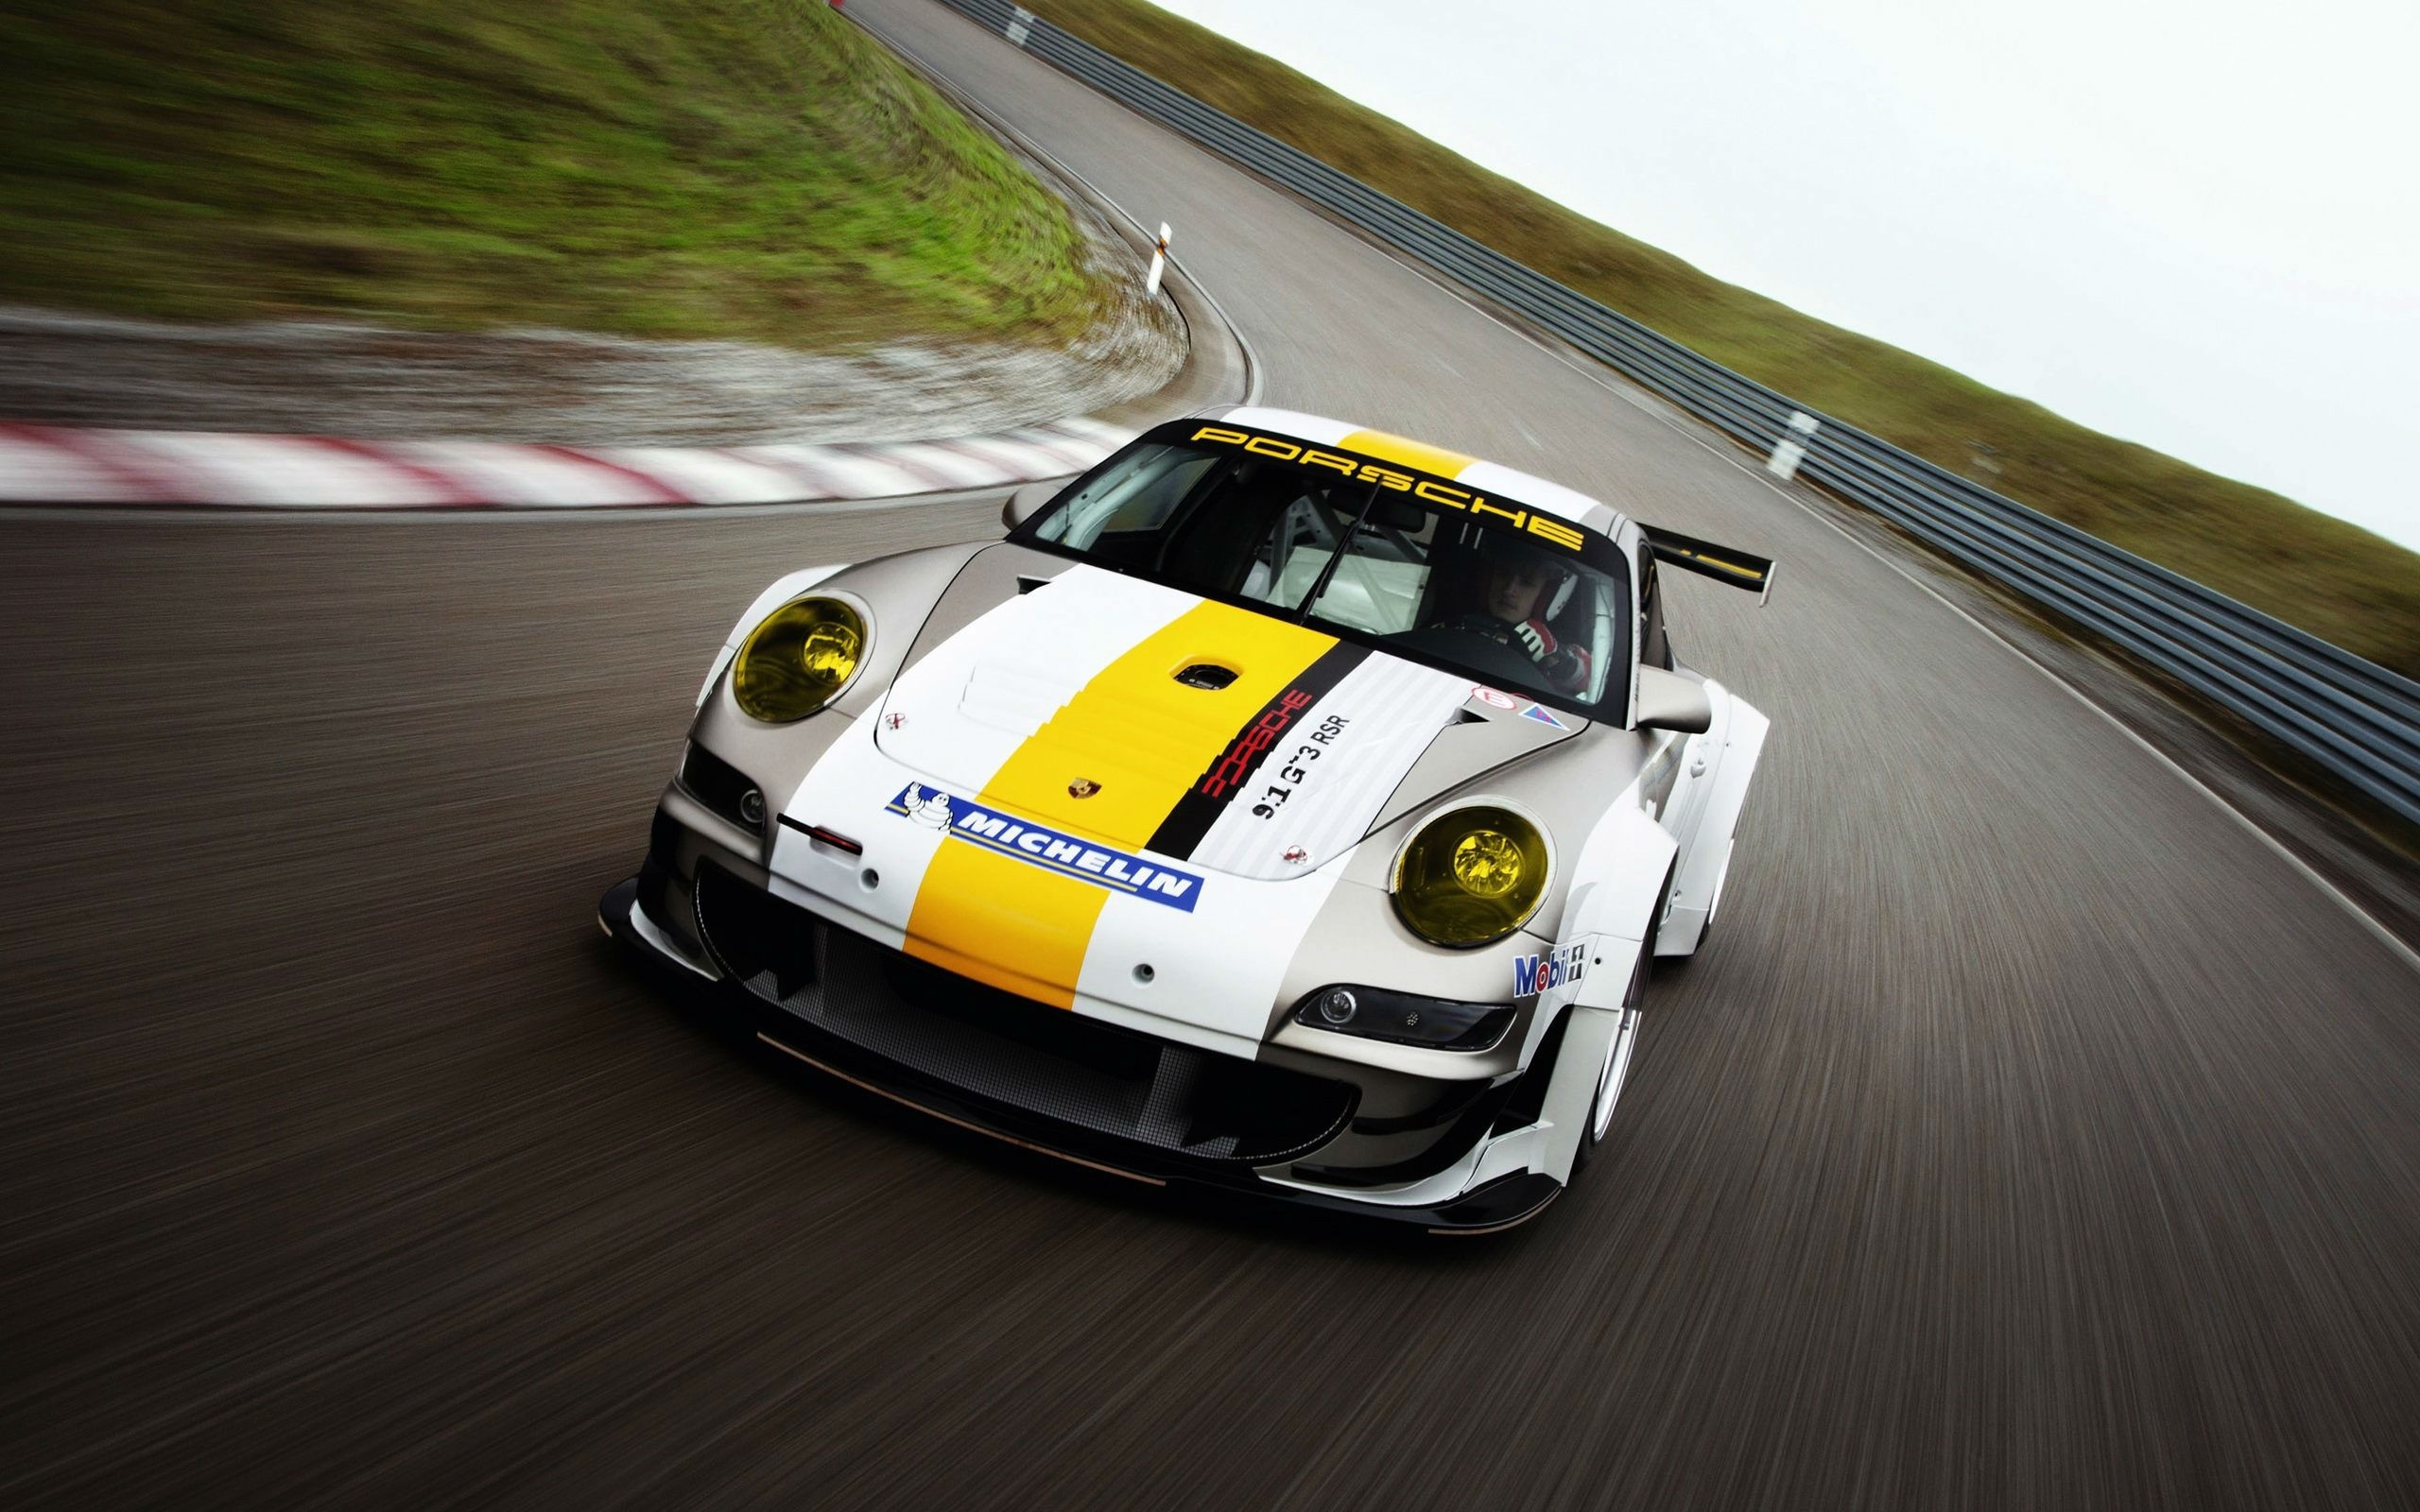 Porsche 911 track racing, HD cars, 4K wallpapers, Motorsport elegance, 2560x1600 HD Desktop